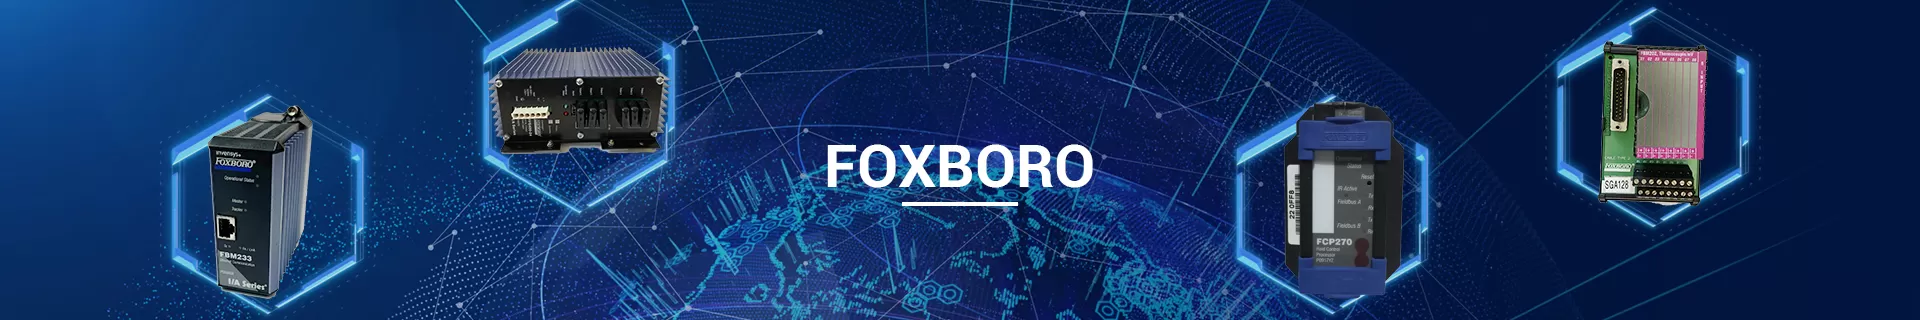 FOXBORO